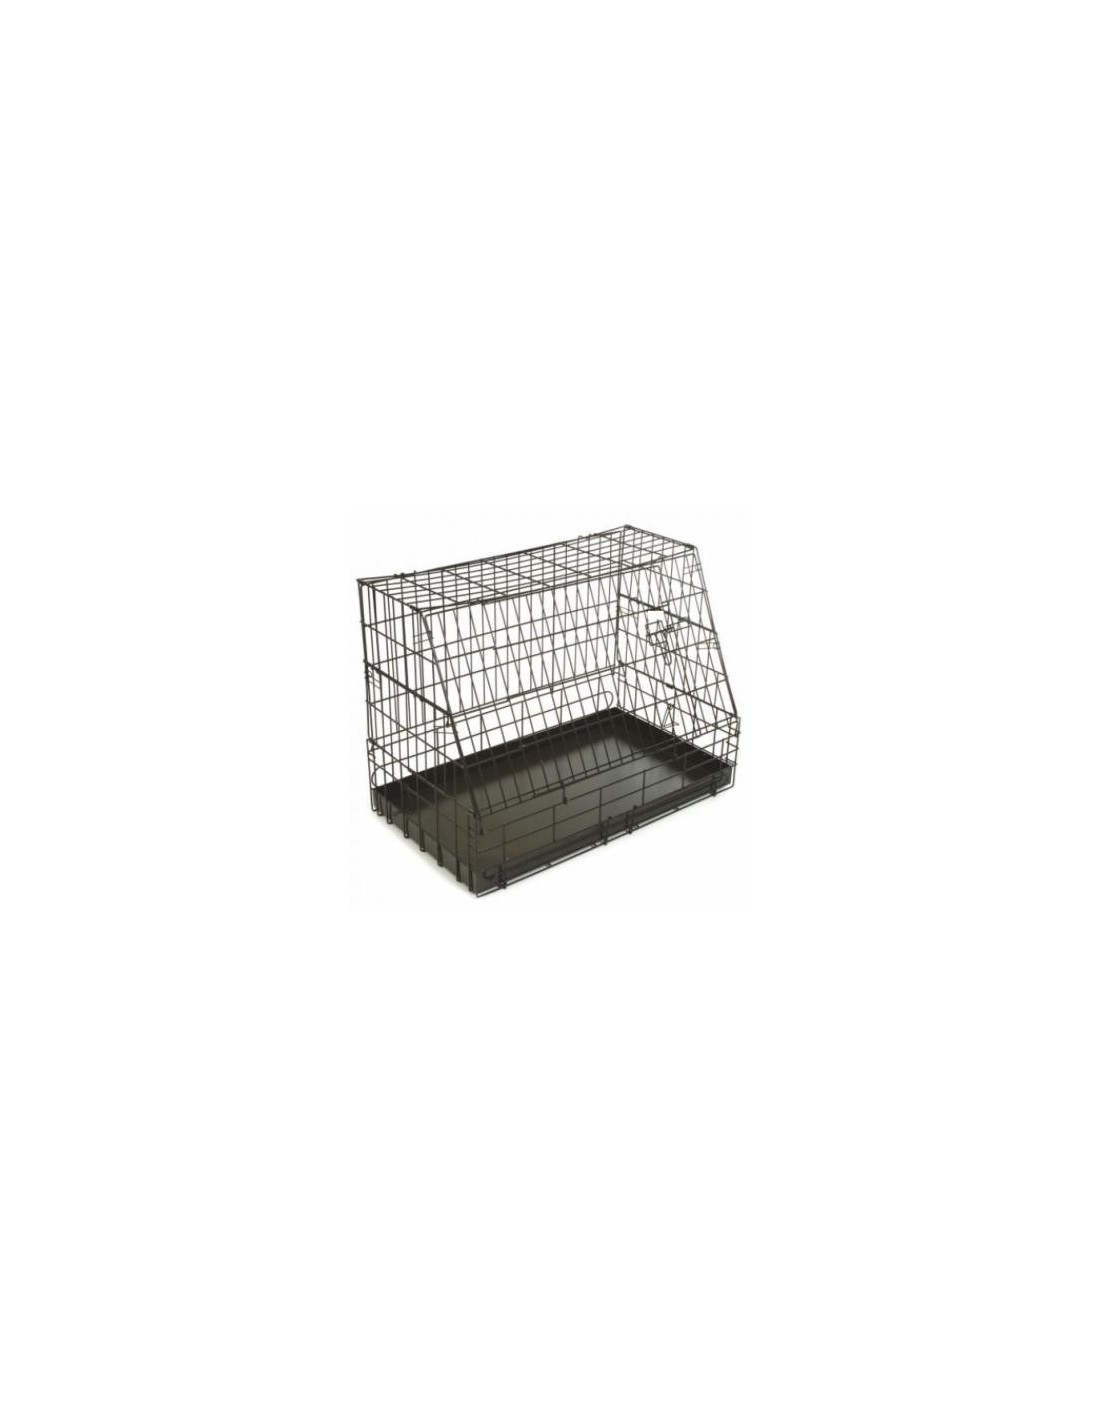 Cage pour chats et chiens 150x60 - Cod. LZ00060G